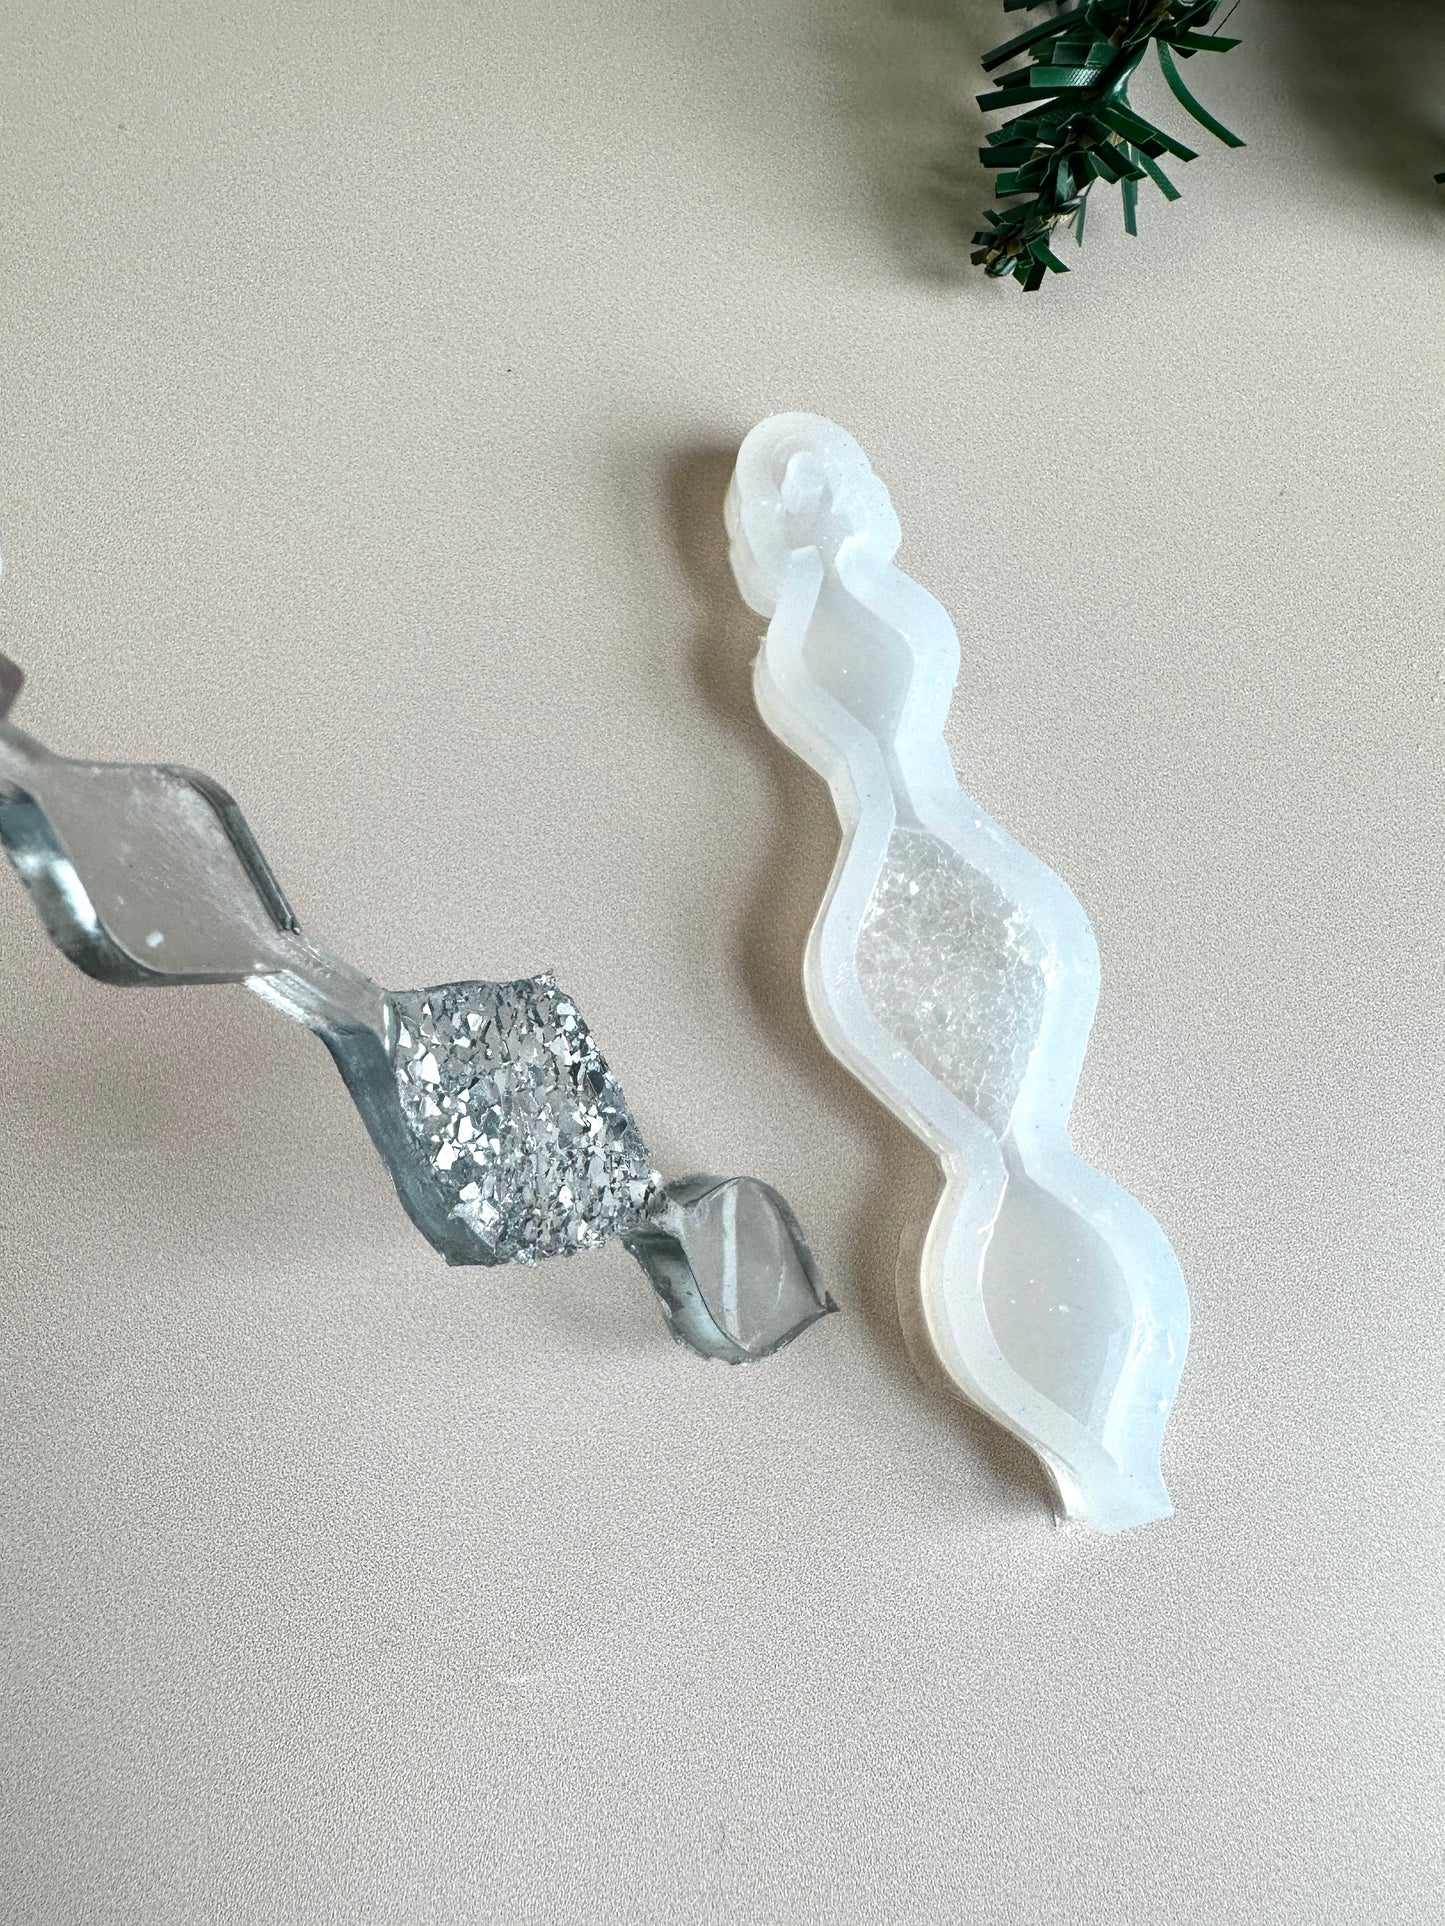 Silikonform für Weihnachtsbaumschmuck mit Kristallen – eiszapfenförmige Formen für Kunstharz-Bastelarbeiten – perfektes DIY-Weihnachtsdekor-Geschenk